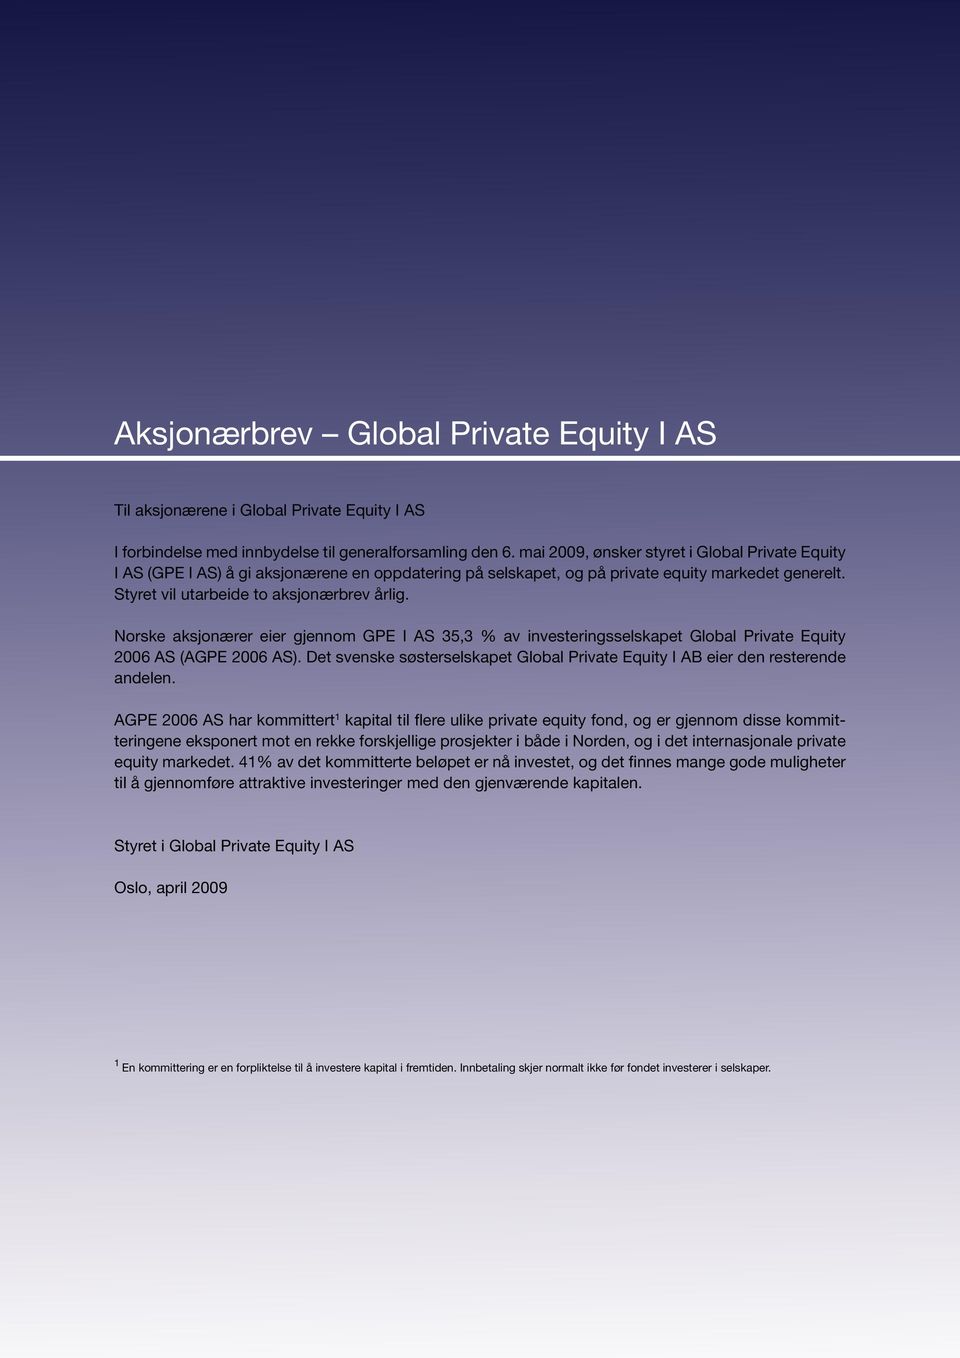 Norske aksjonærer eier gjennom GPE I AS 35,3 % av investeringsselskapet Global Private Equity 2006 AS (AGPE 2006 AS).